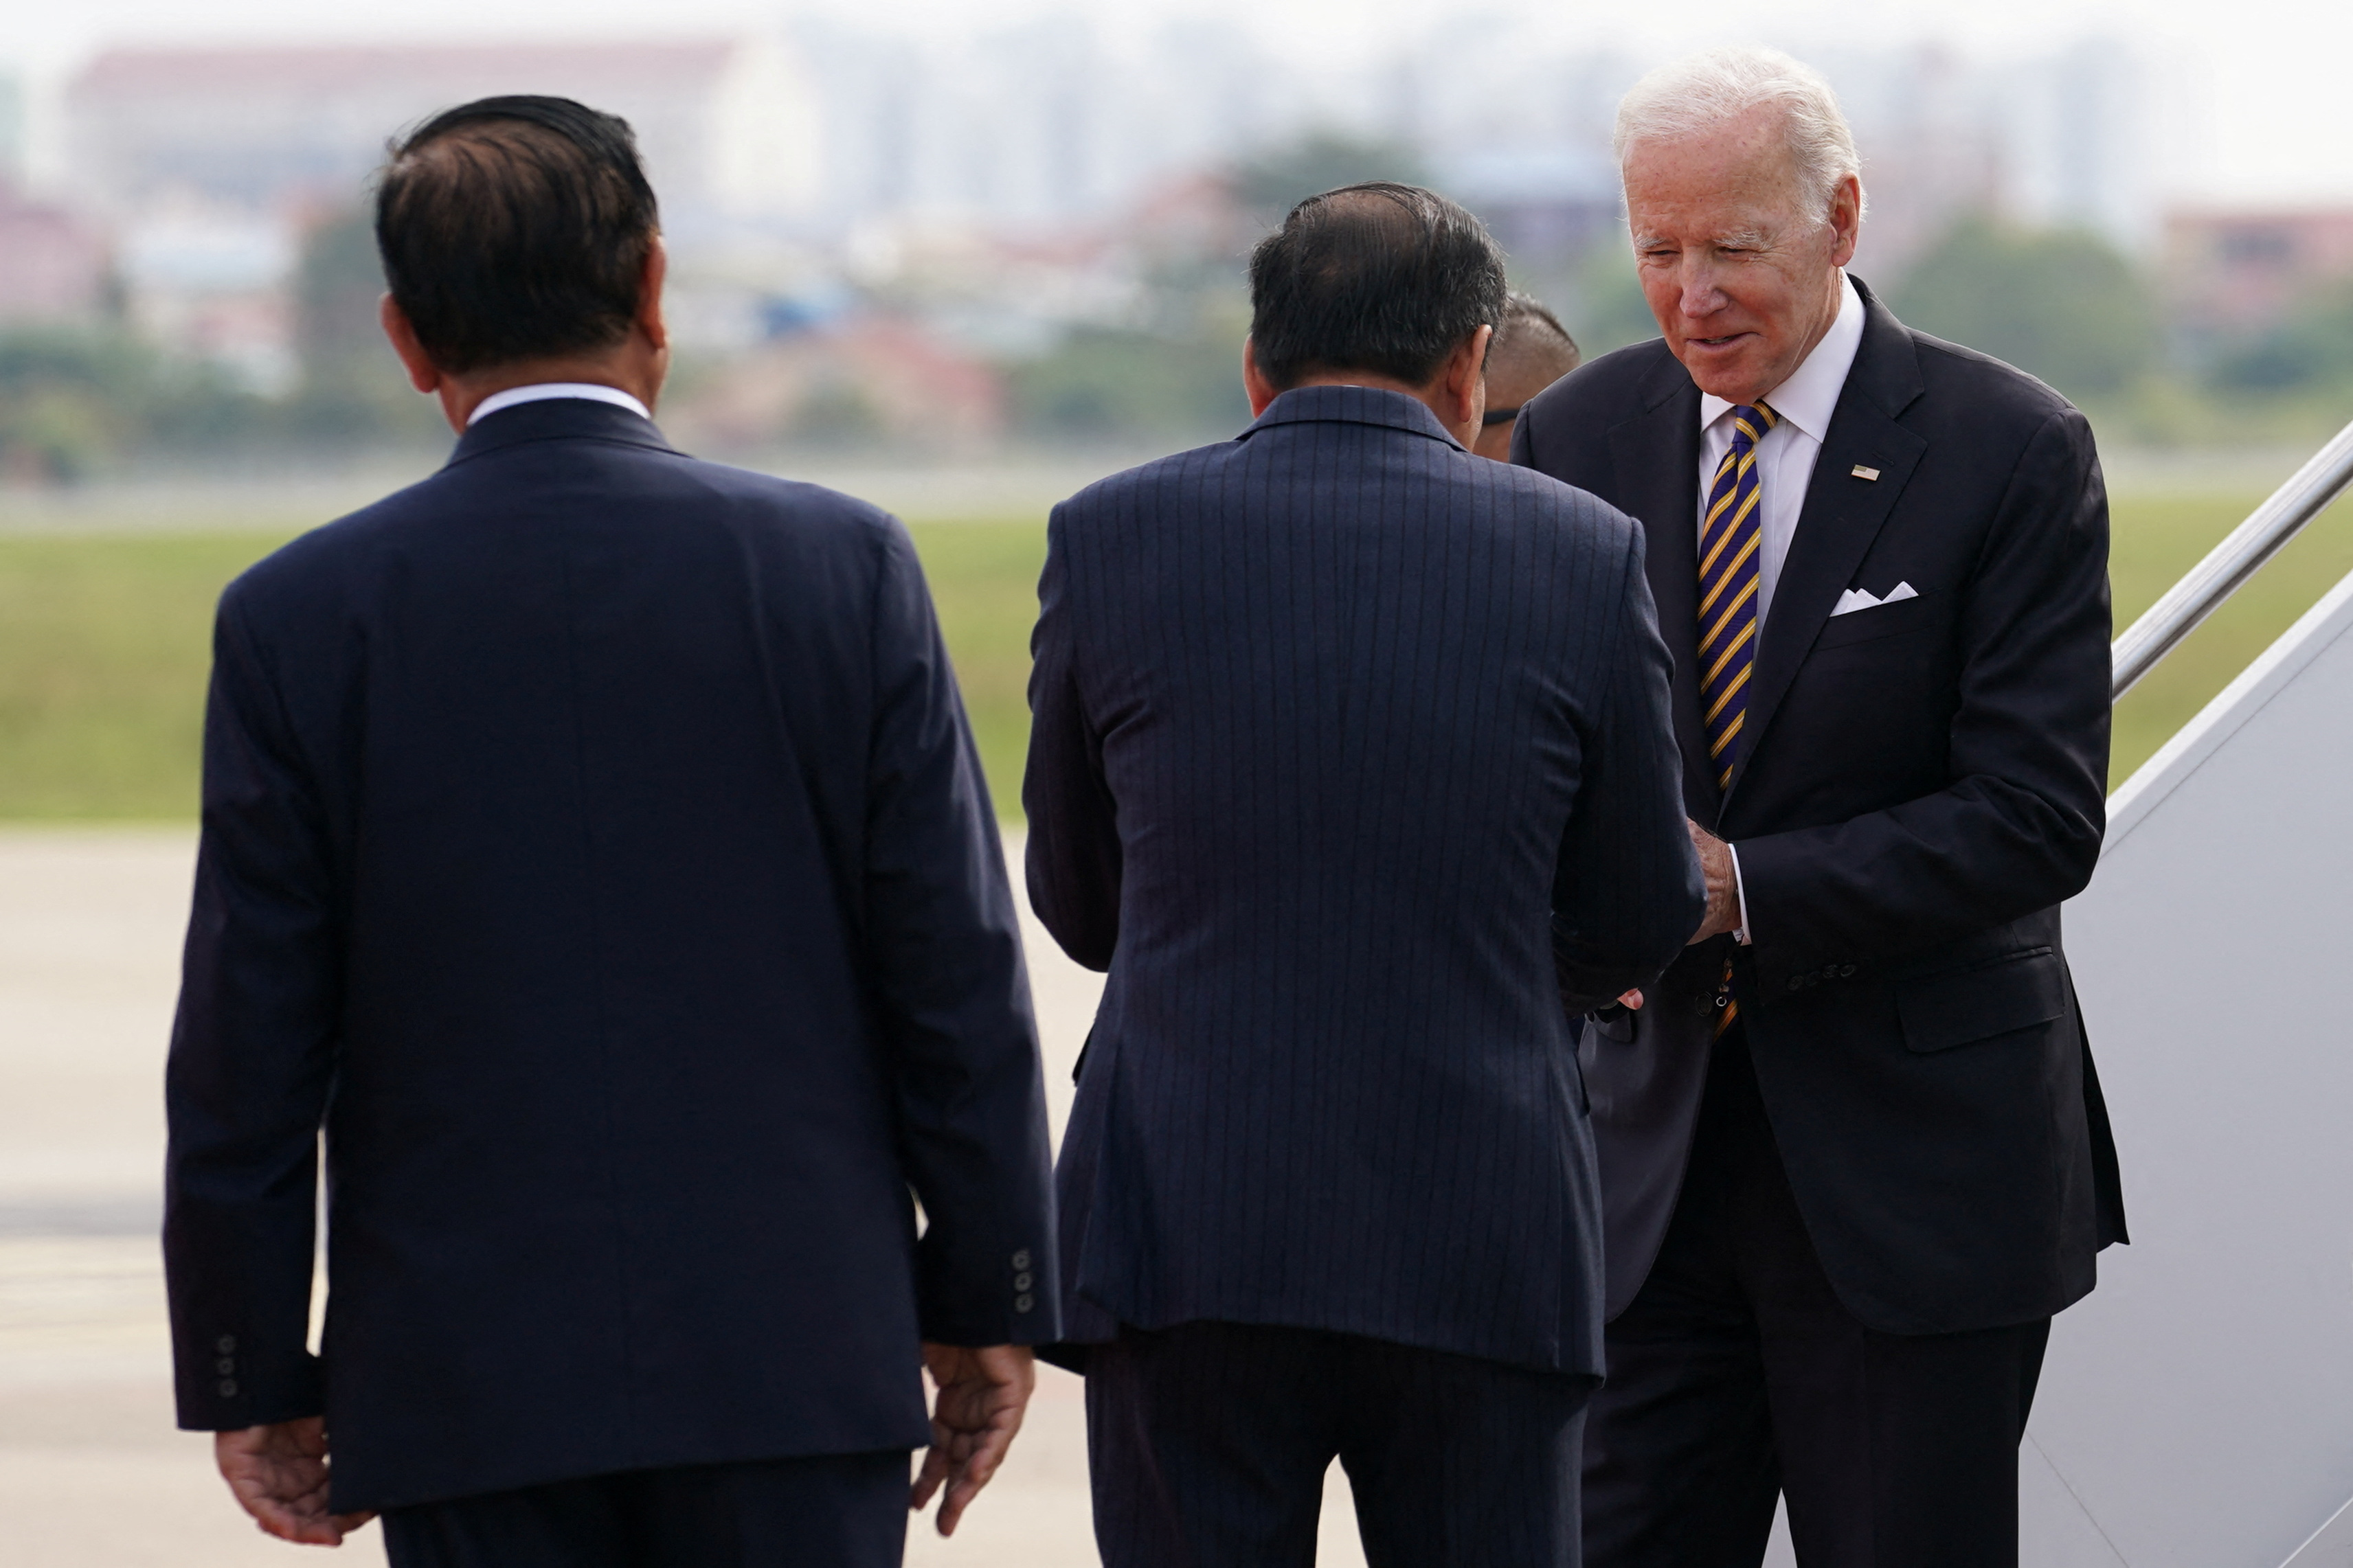 Sullivan indicó que Biden llegó a Phnom Penh con una agenda que enfatiza la política de su gobierno de “aumentar” su presencia en el Sudeste Asiático como un garante de estabilidad. (REUTERS)